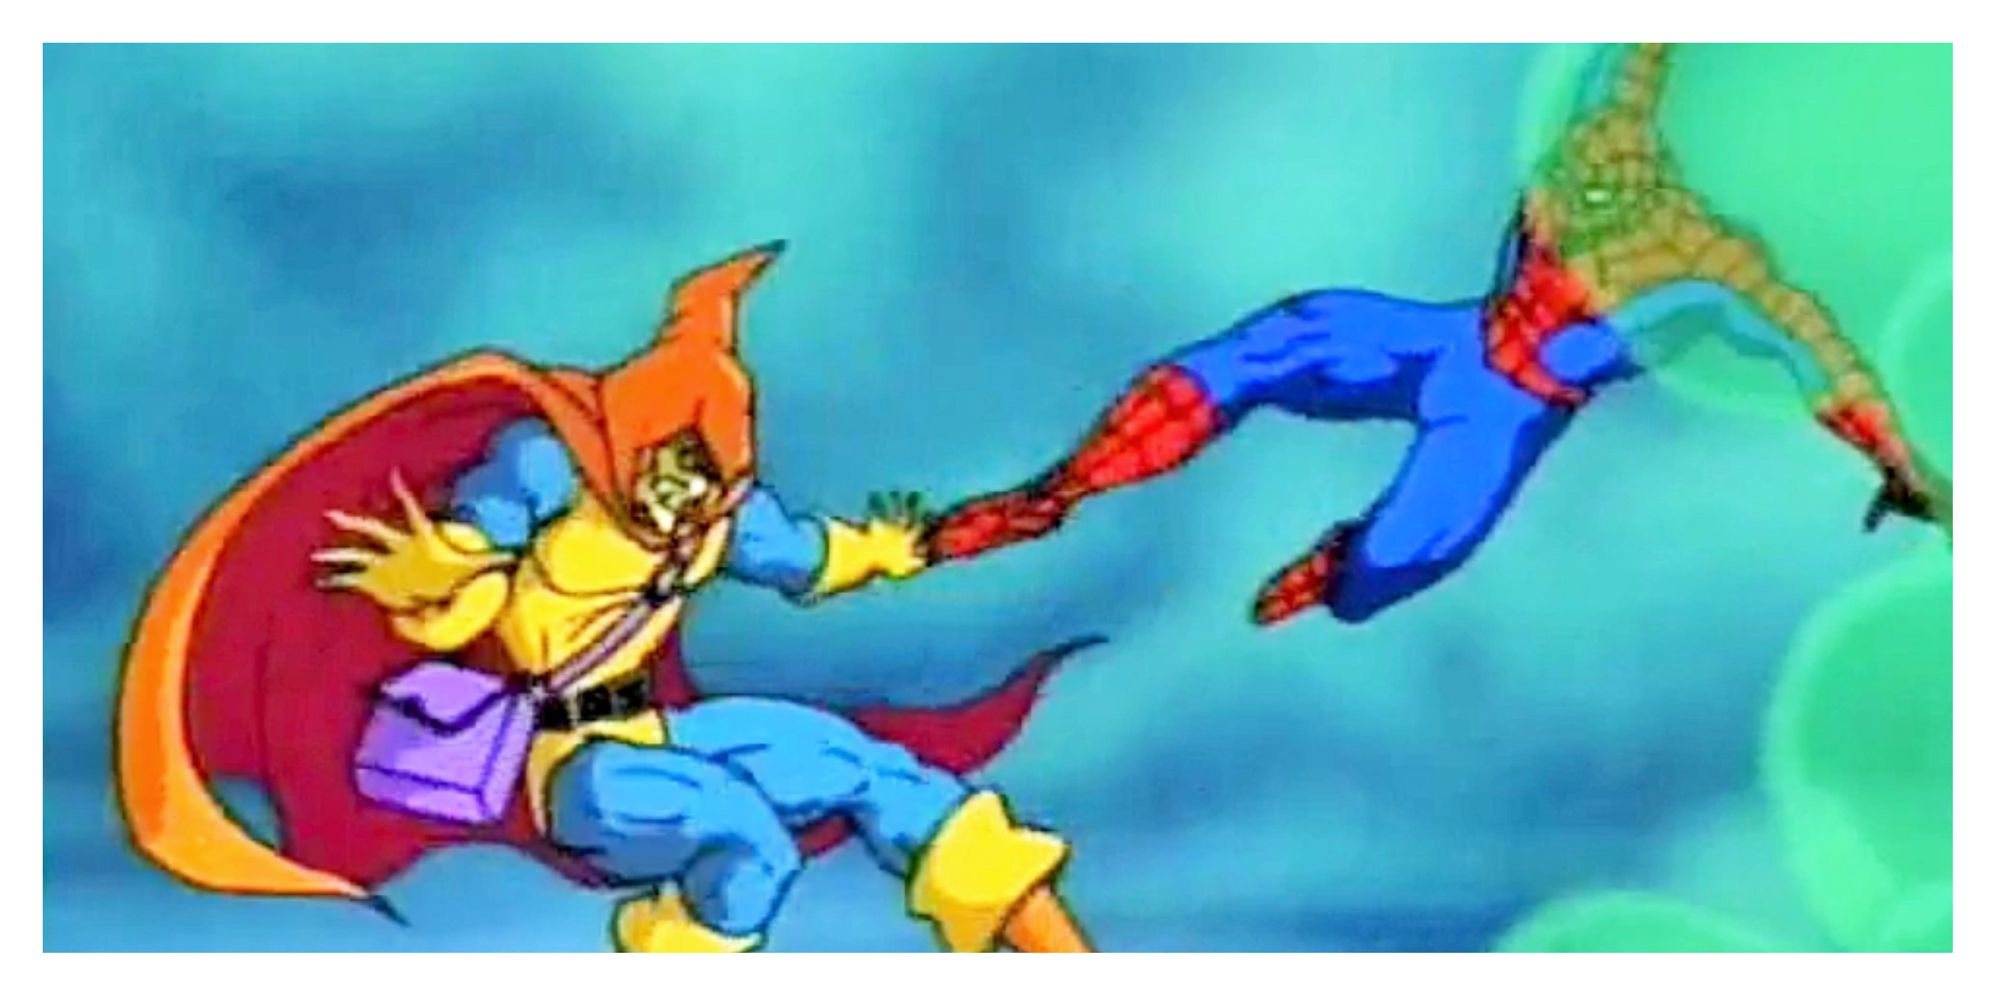 Spider-Man kicks Hobgoblin